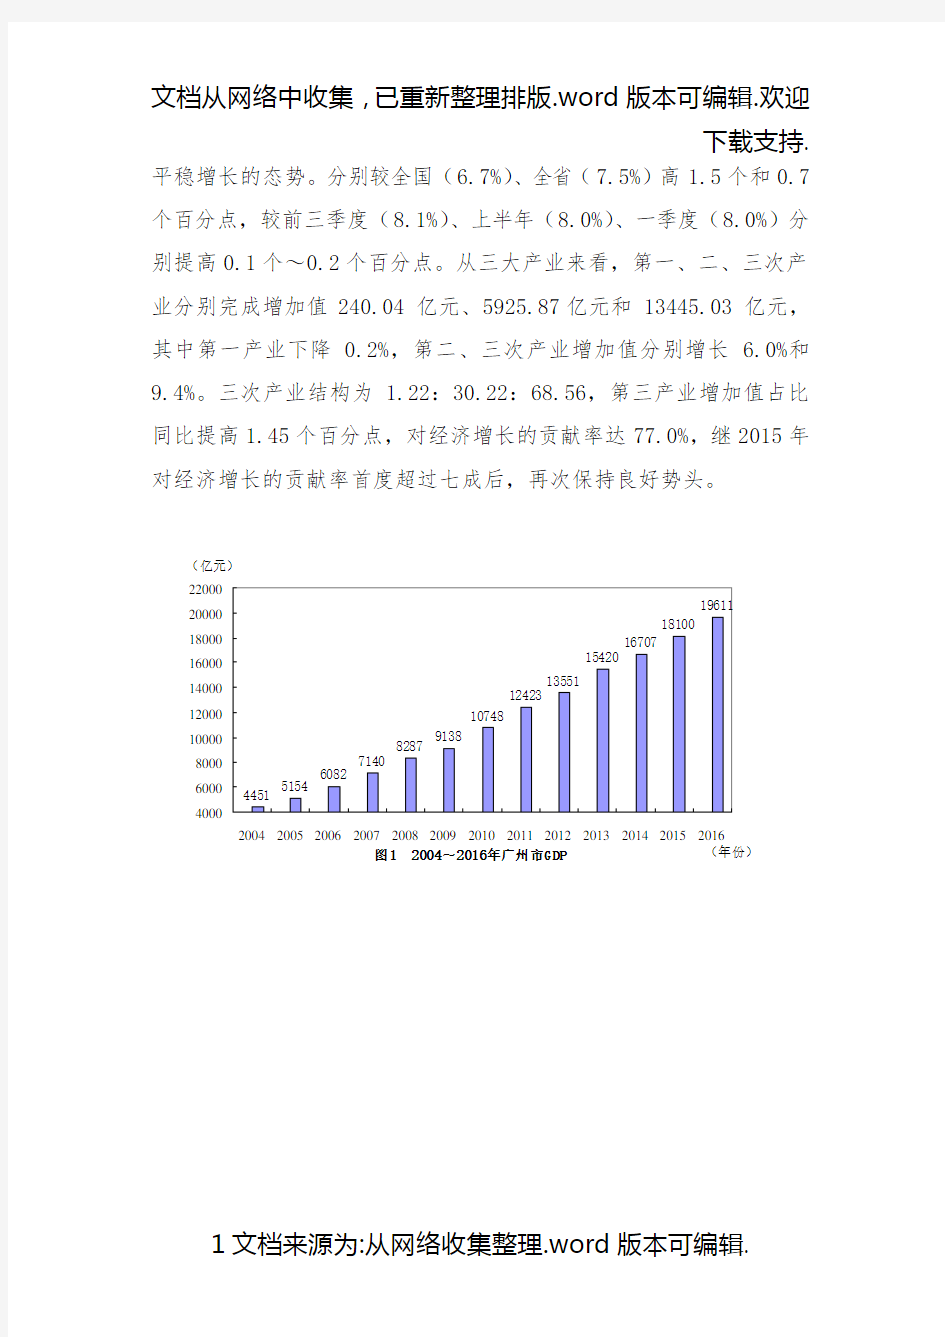 1.2020年广州市经济形势分析和2020年展望